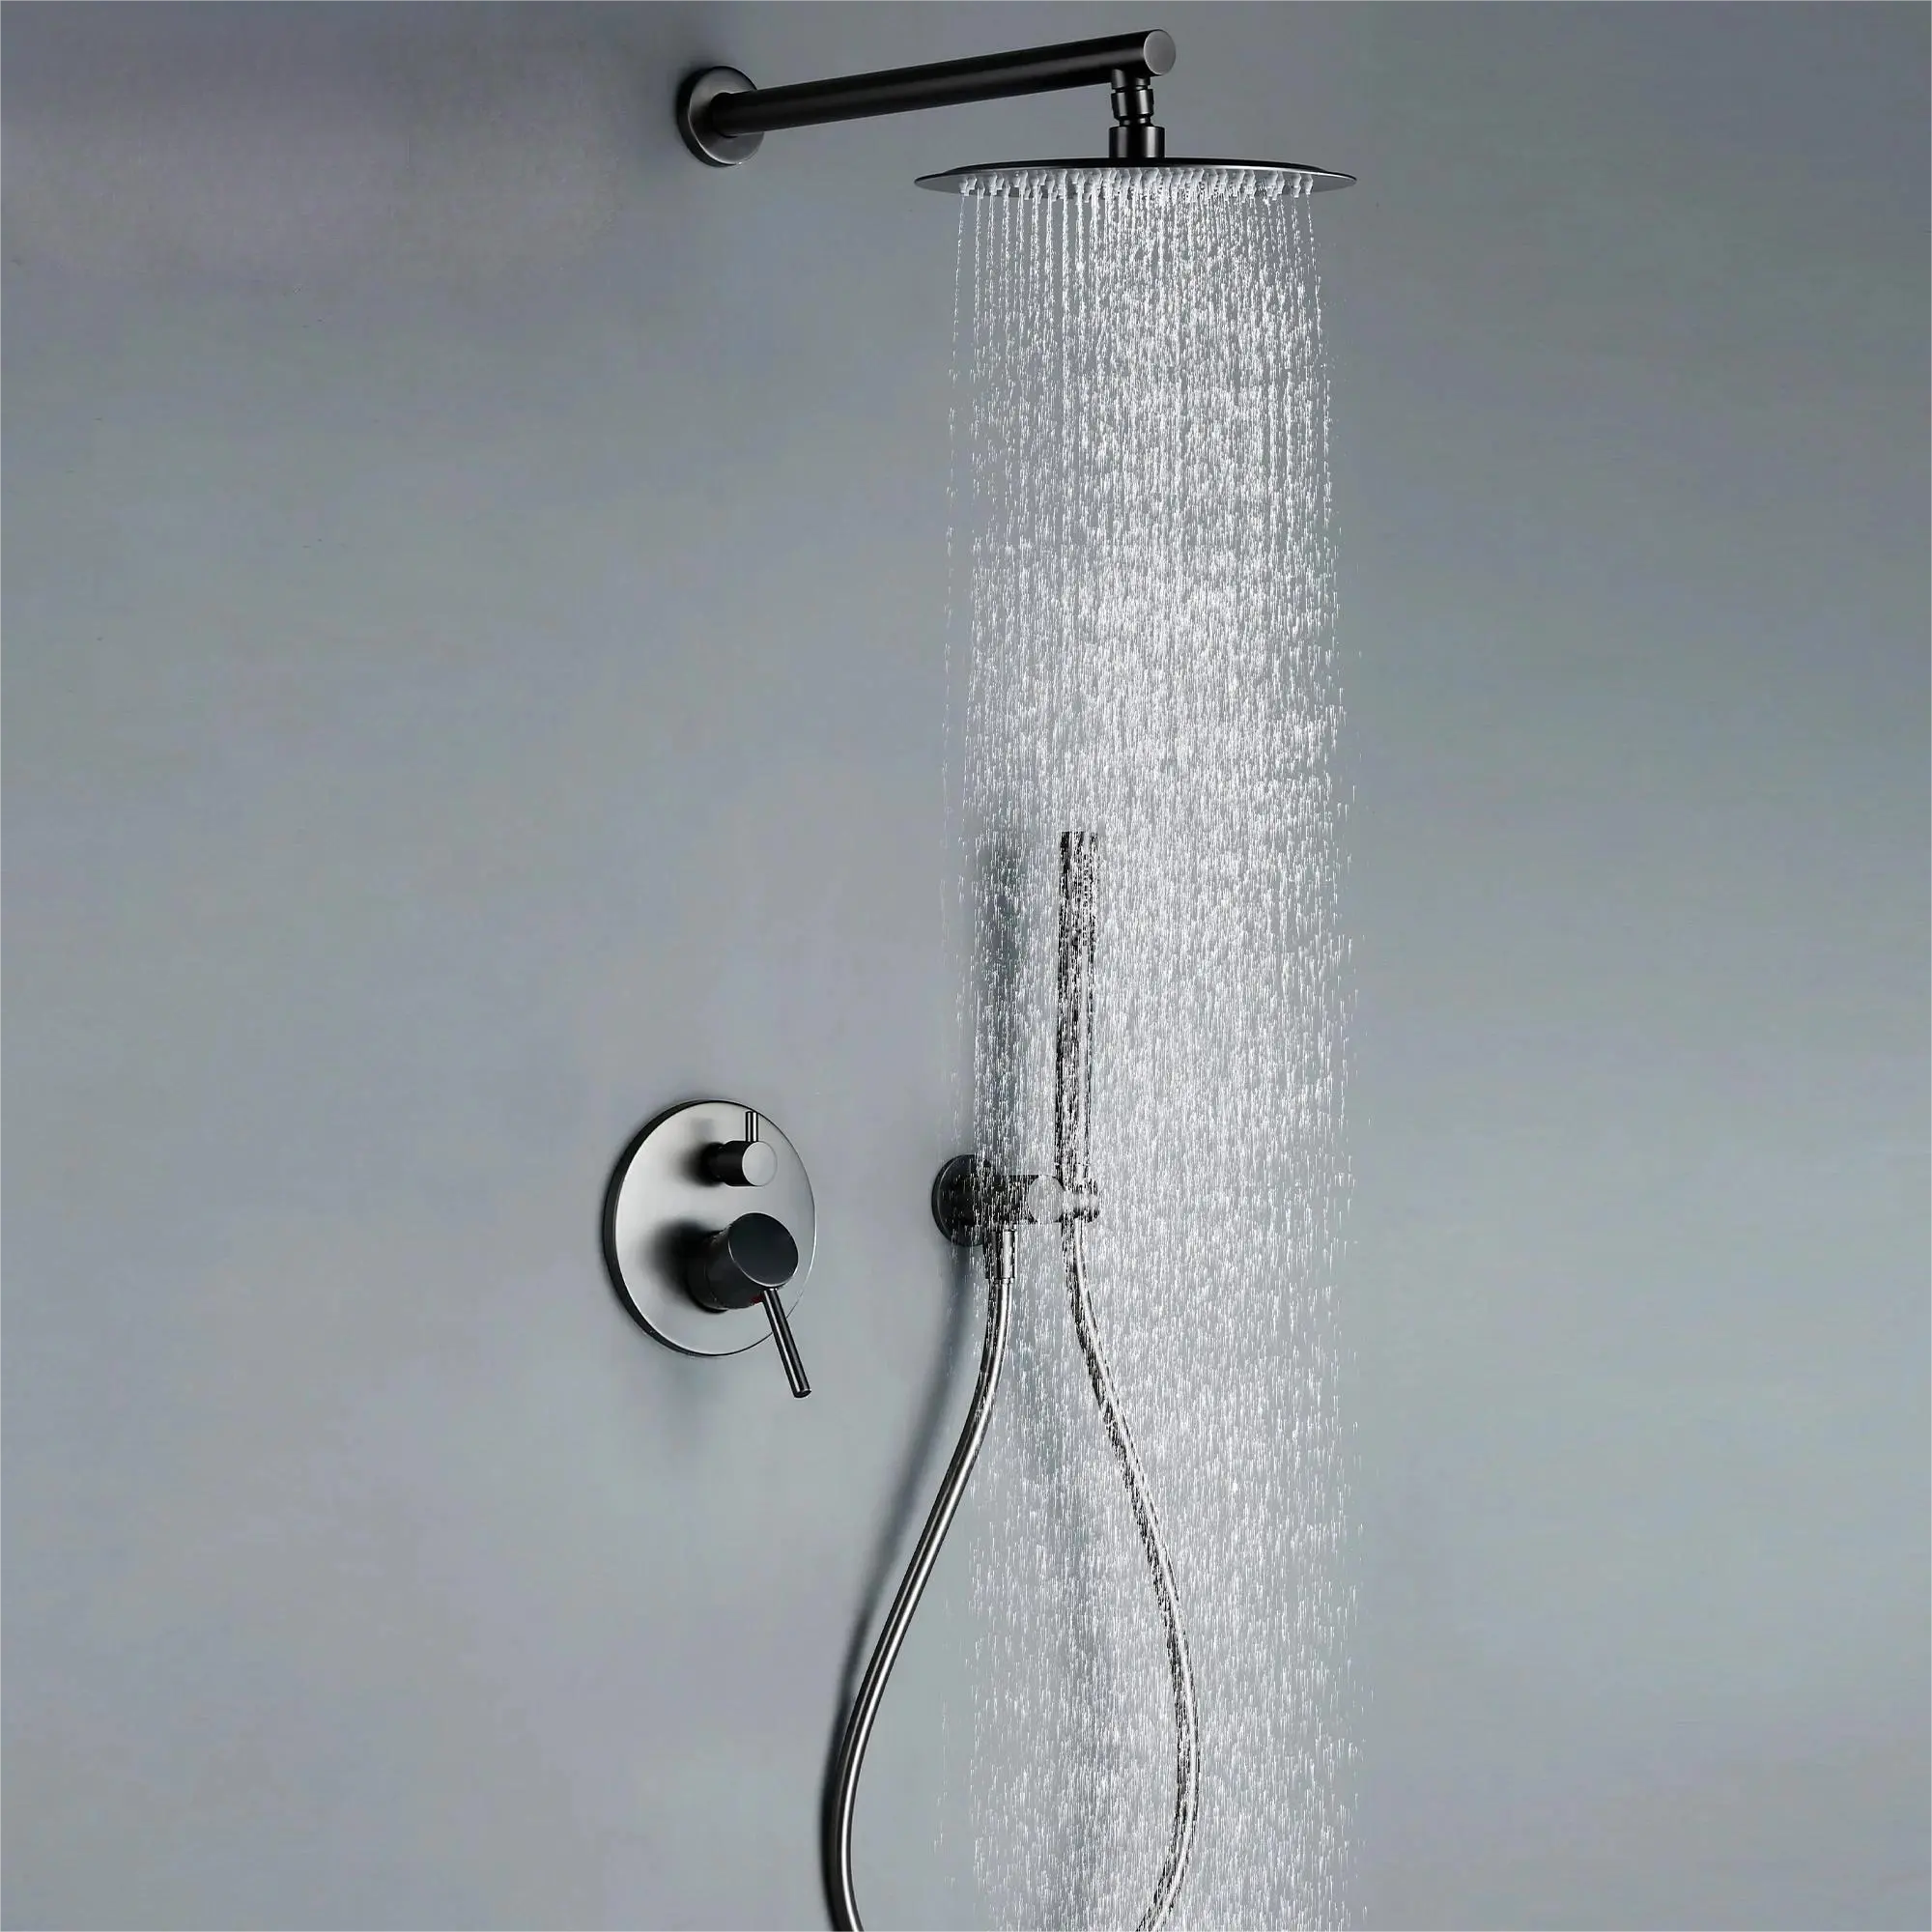 סיטונאי אמבטיה גשם מערכת מיקסר מקלחת מט שחור פליז סמוי ברזי מקלחת אמבטיה סט לחדר רחצה במלון